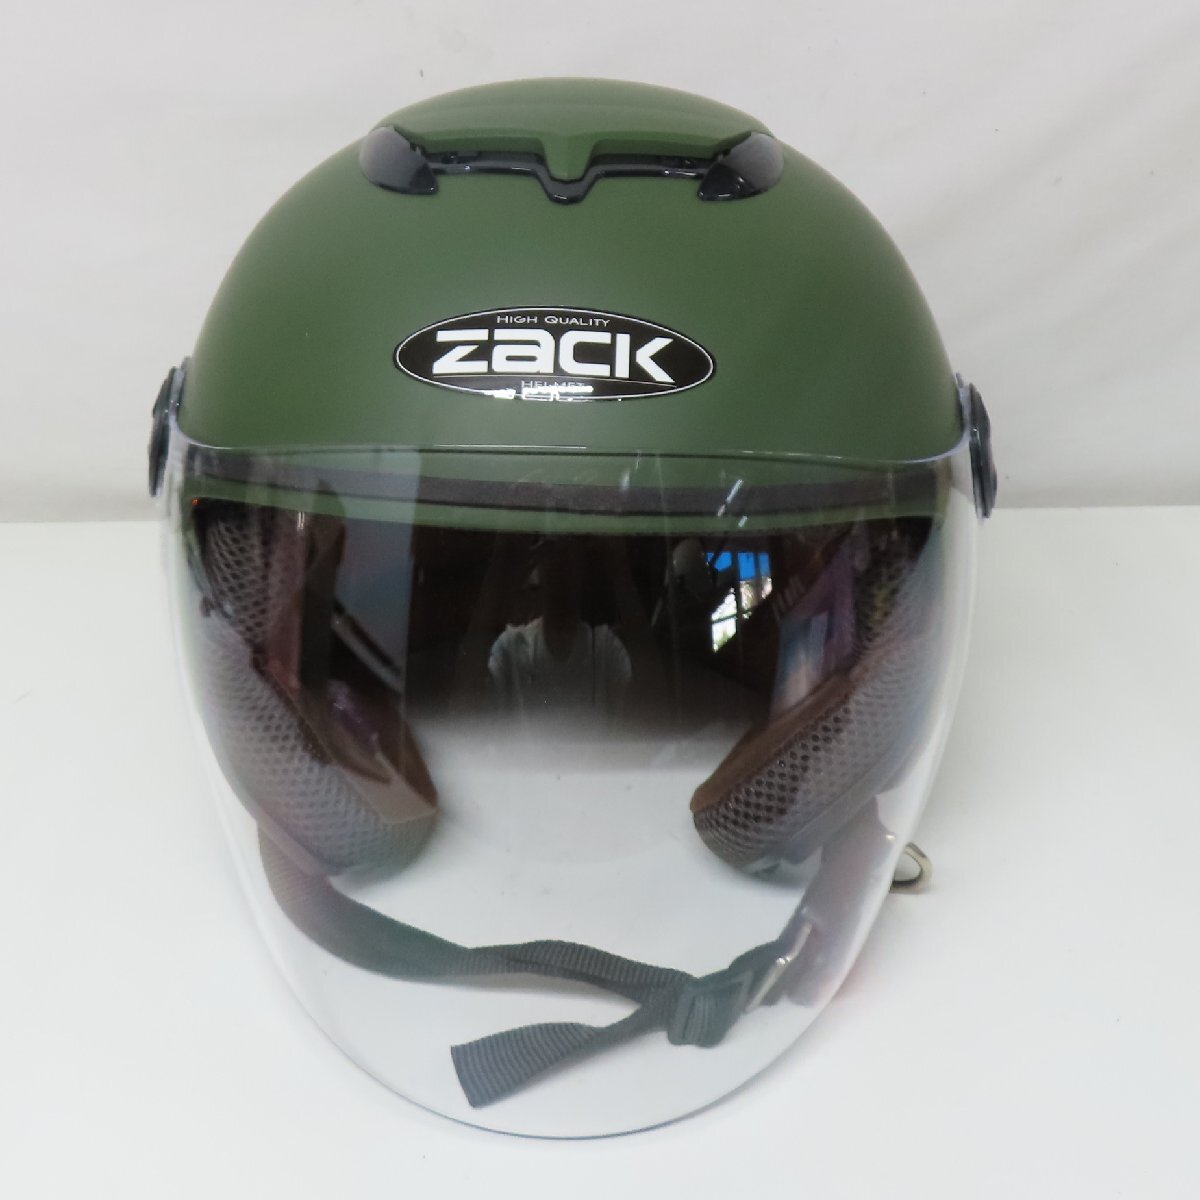 [ прекрасный товар ]ZACK рюкзак ZJ-3 шлем свободный размер мотоцикл 2 колесо мотоцикл touring скутер мопед козырек 